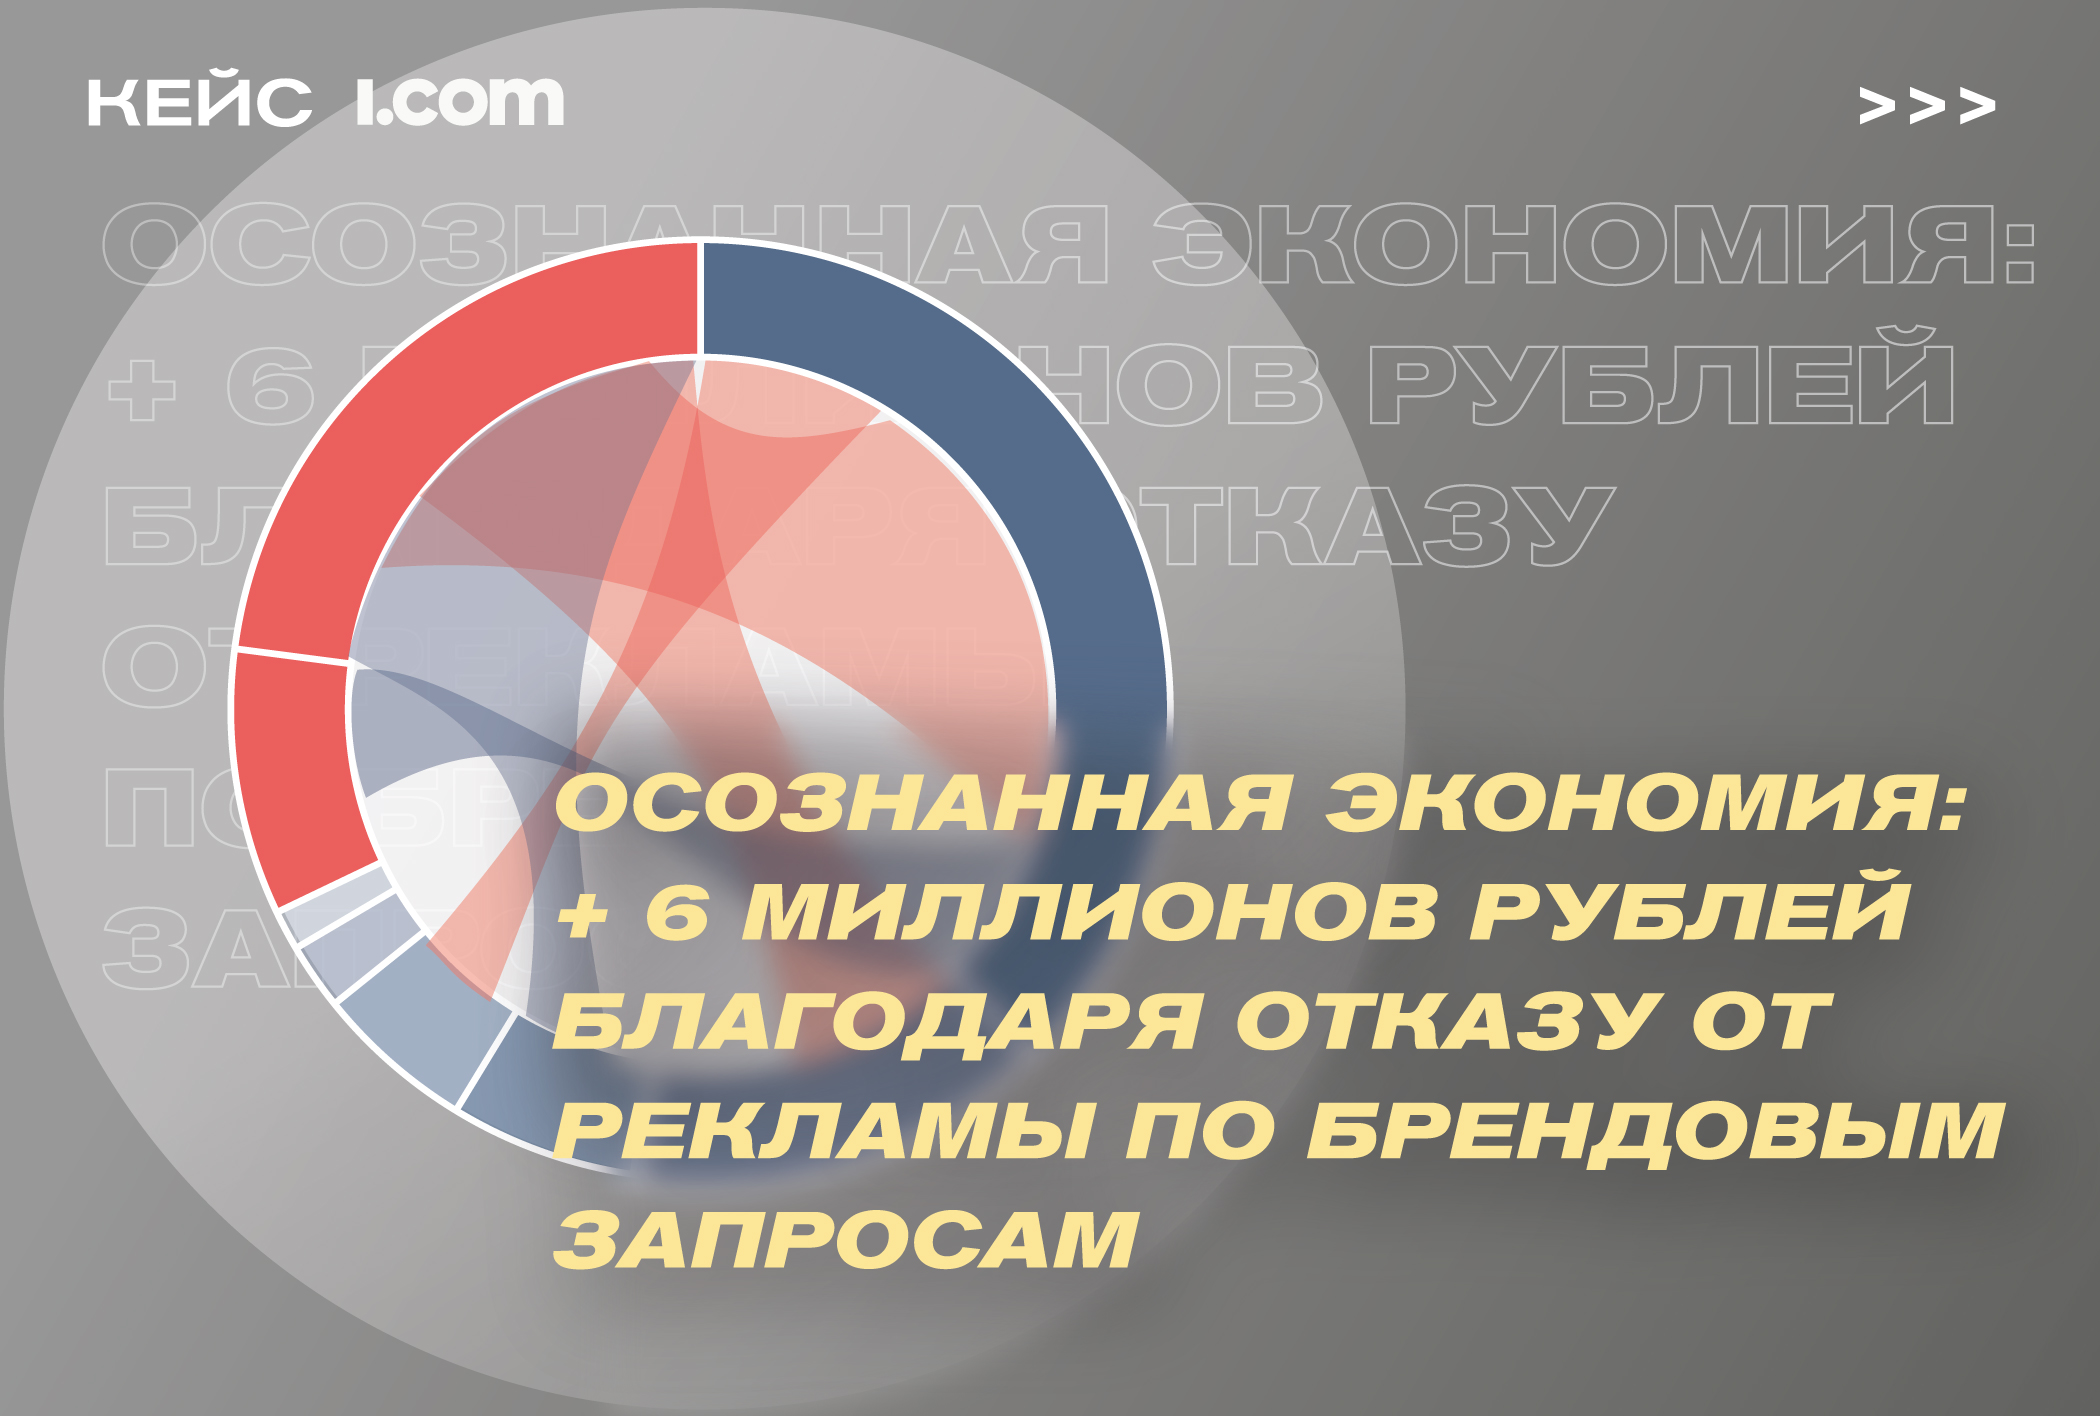 Картинка Кейс i.com: +6 миллионов рублей благодаря отказу от рекламы по брендовым запросам в фарме